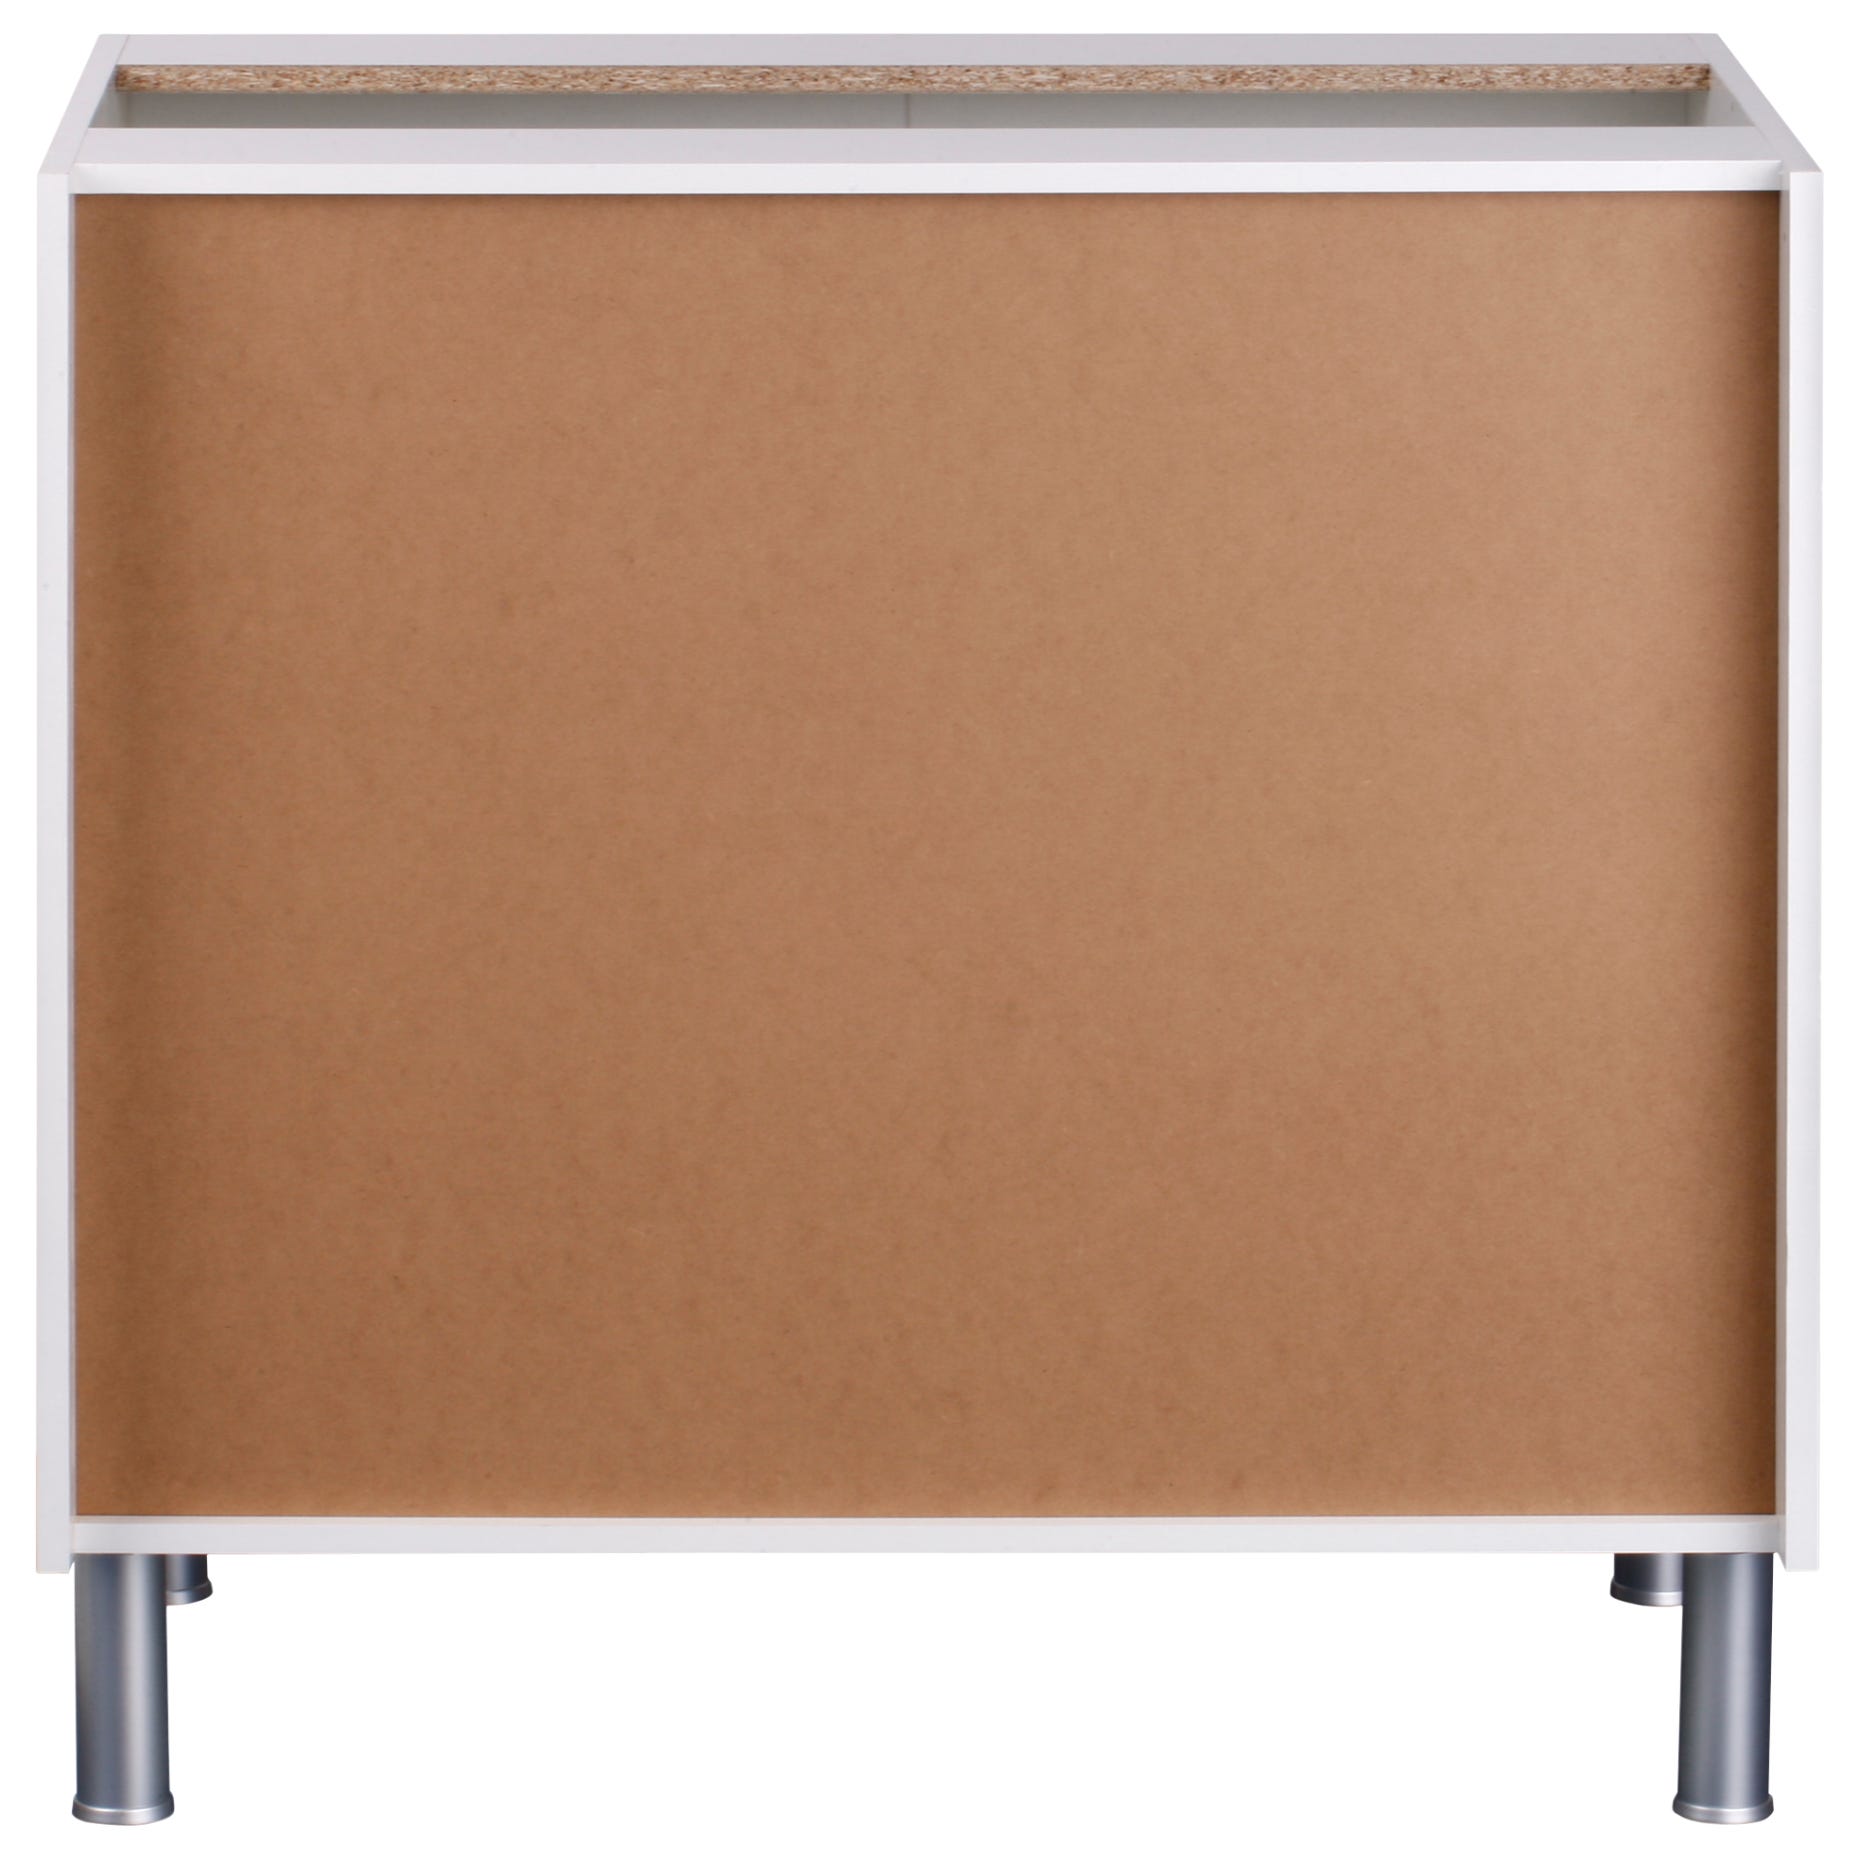 Mueble bajo BASIC blanco 2 puertas fabricado en aglomerado 80 x 70 cm